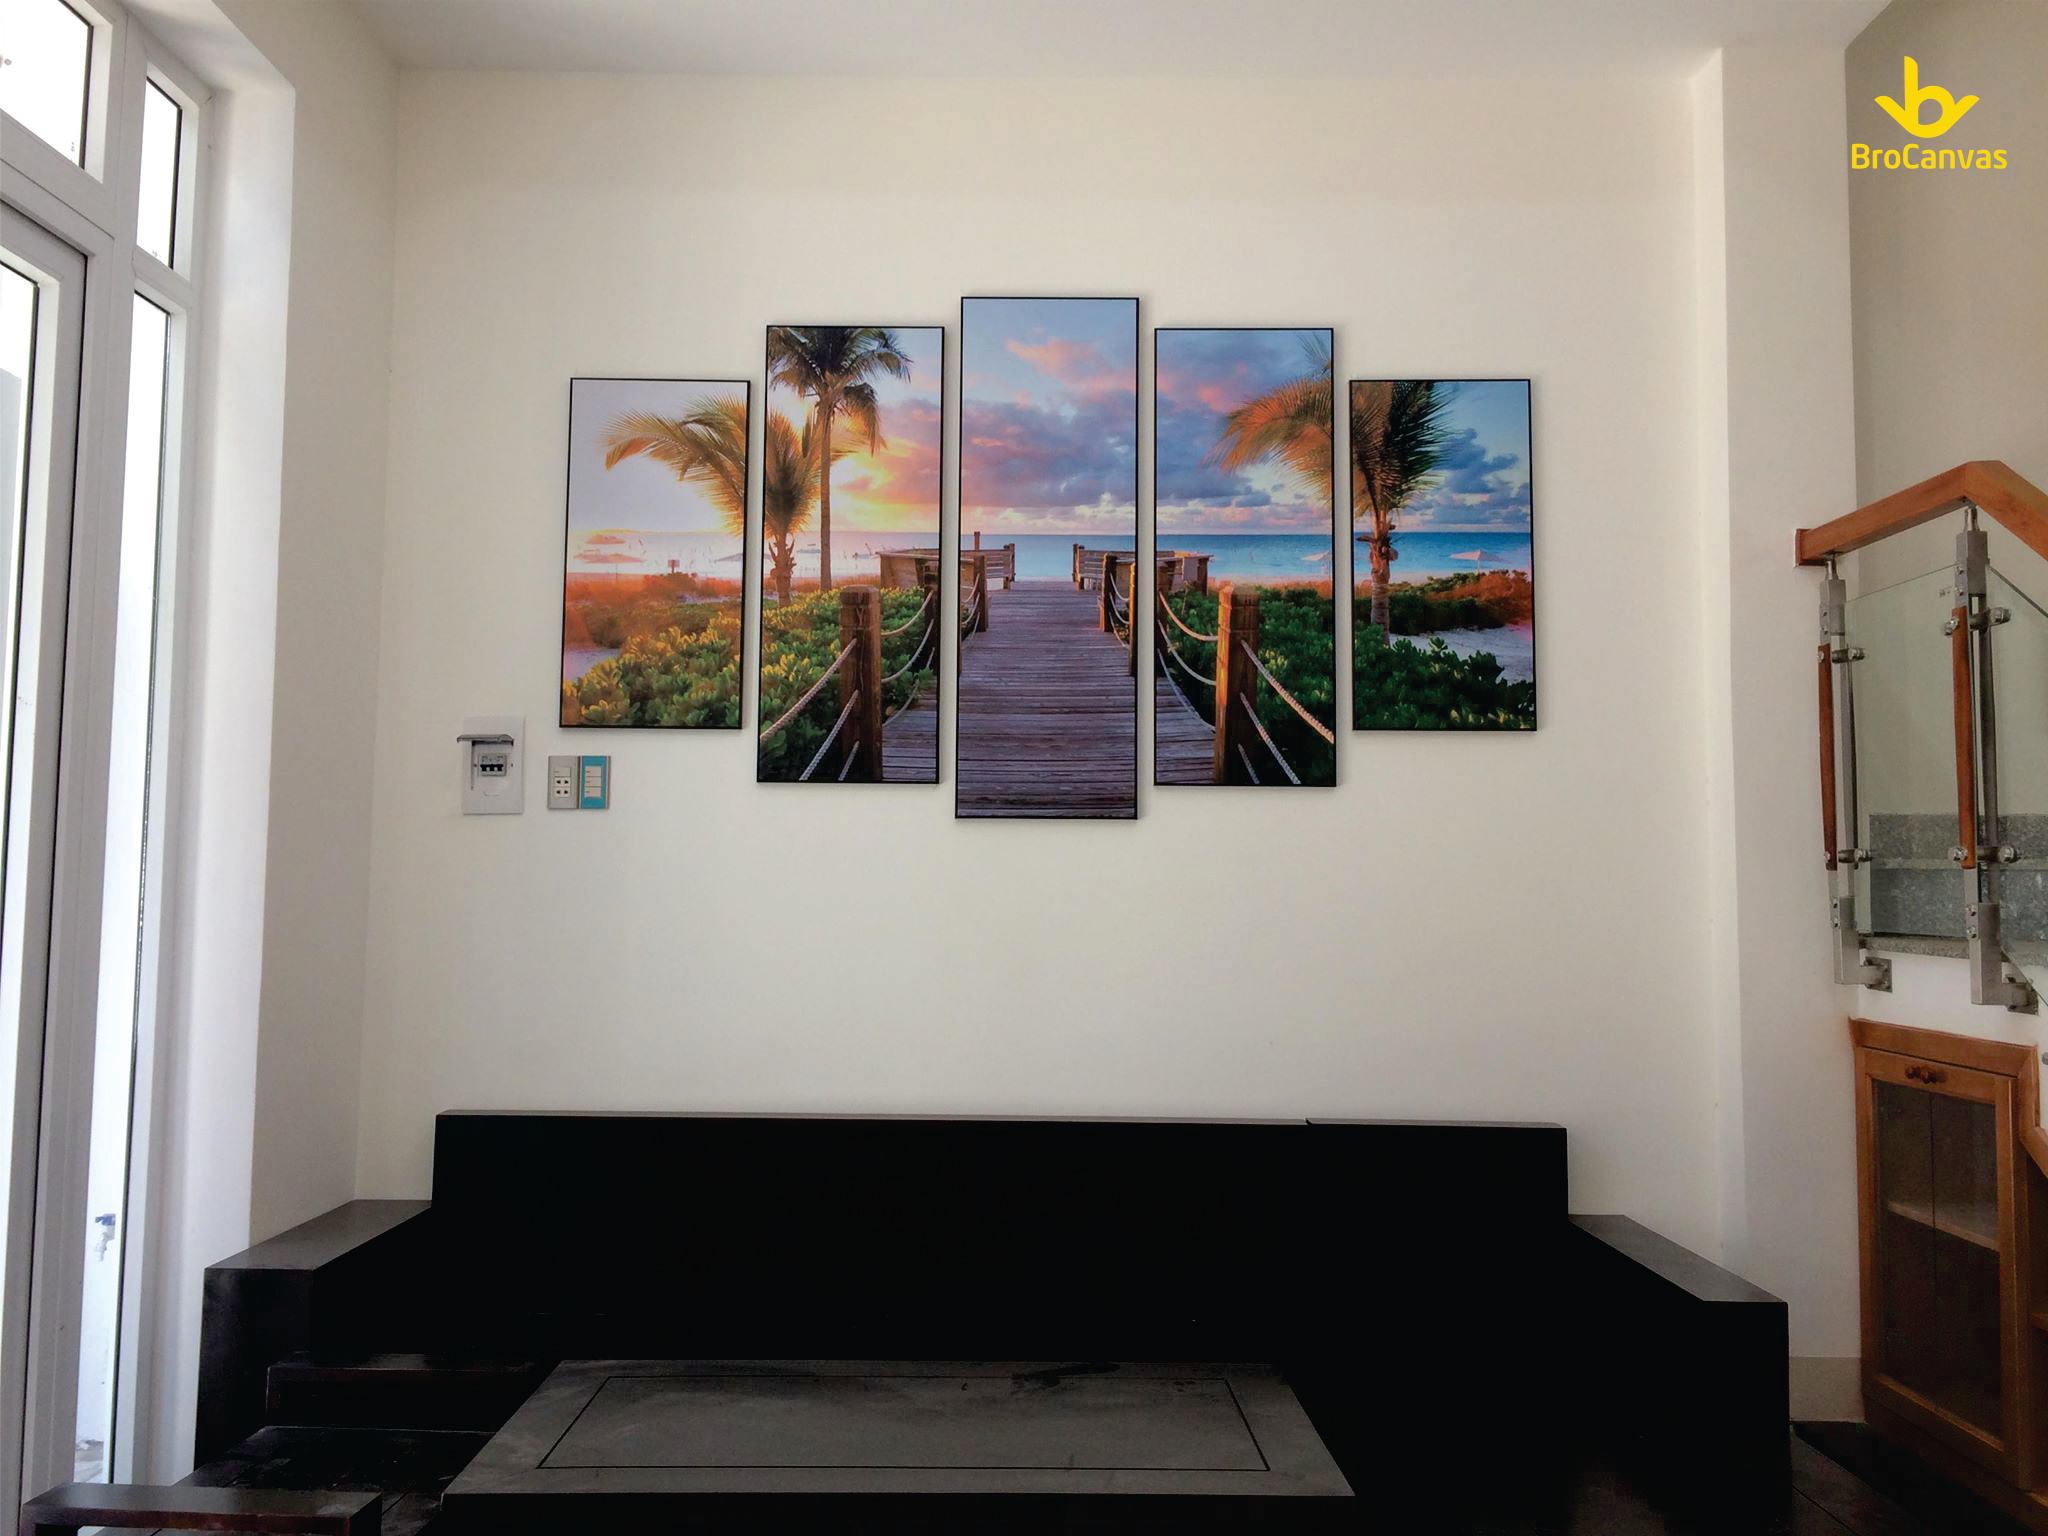 Hướng dẫn cách decor phòng khách cho mọi nhà bằng tranh canvas